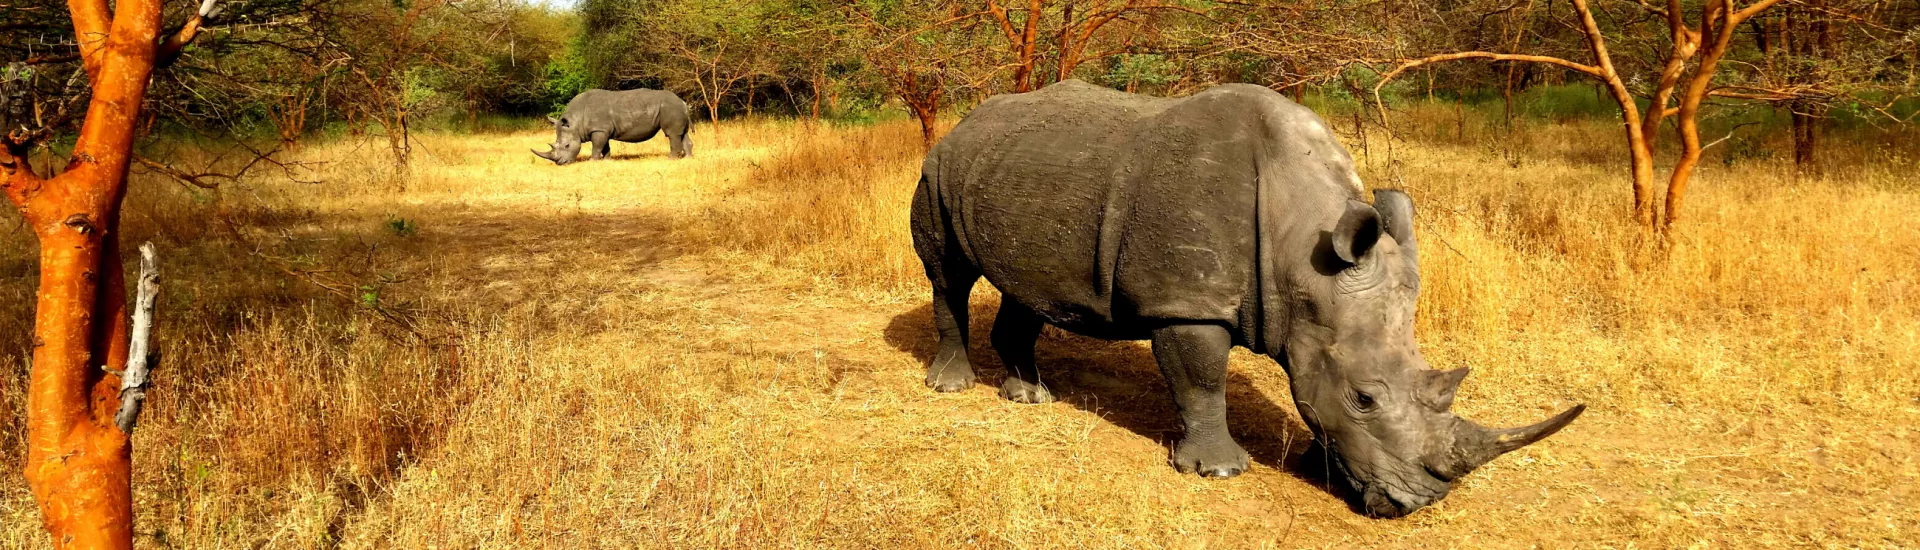 Rhino-Safari in Senegal - Nashorn, Rhinozeros und Großwild